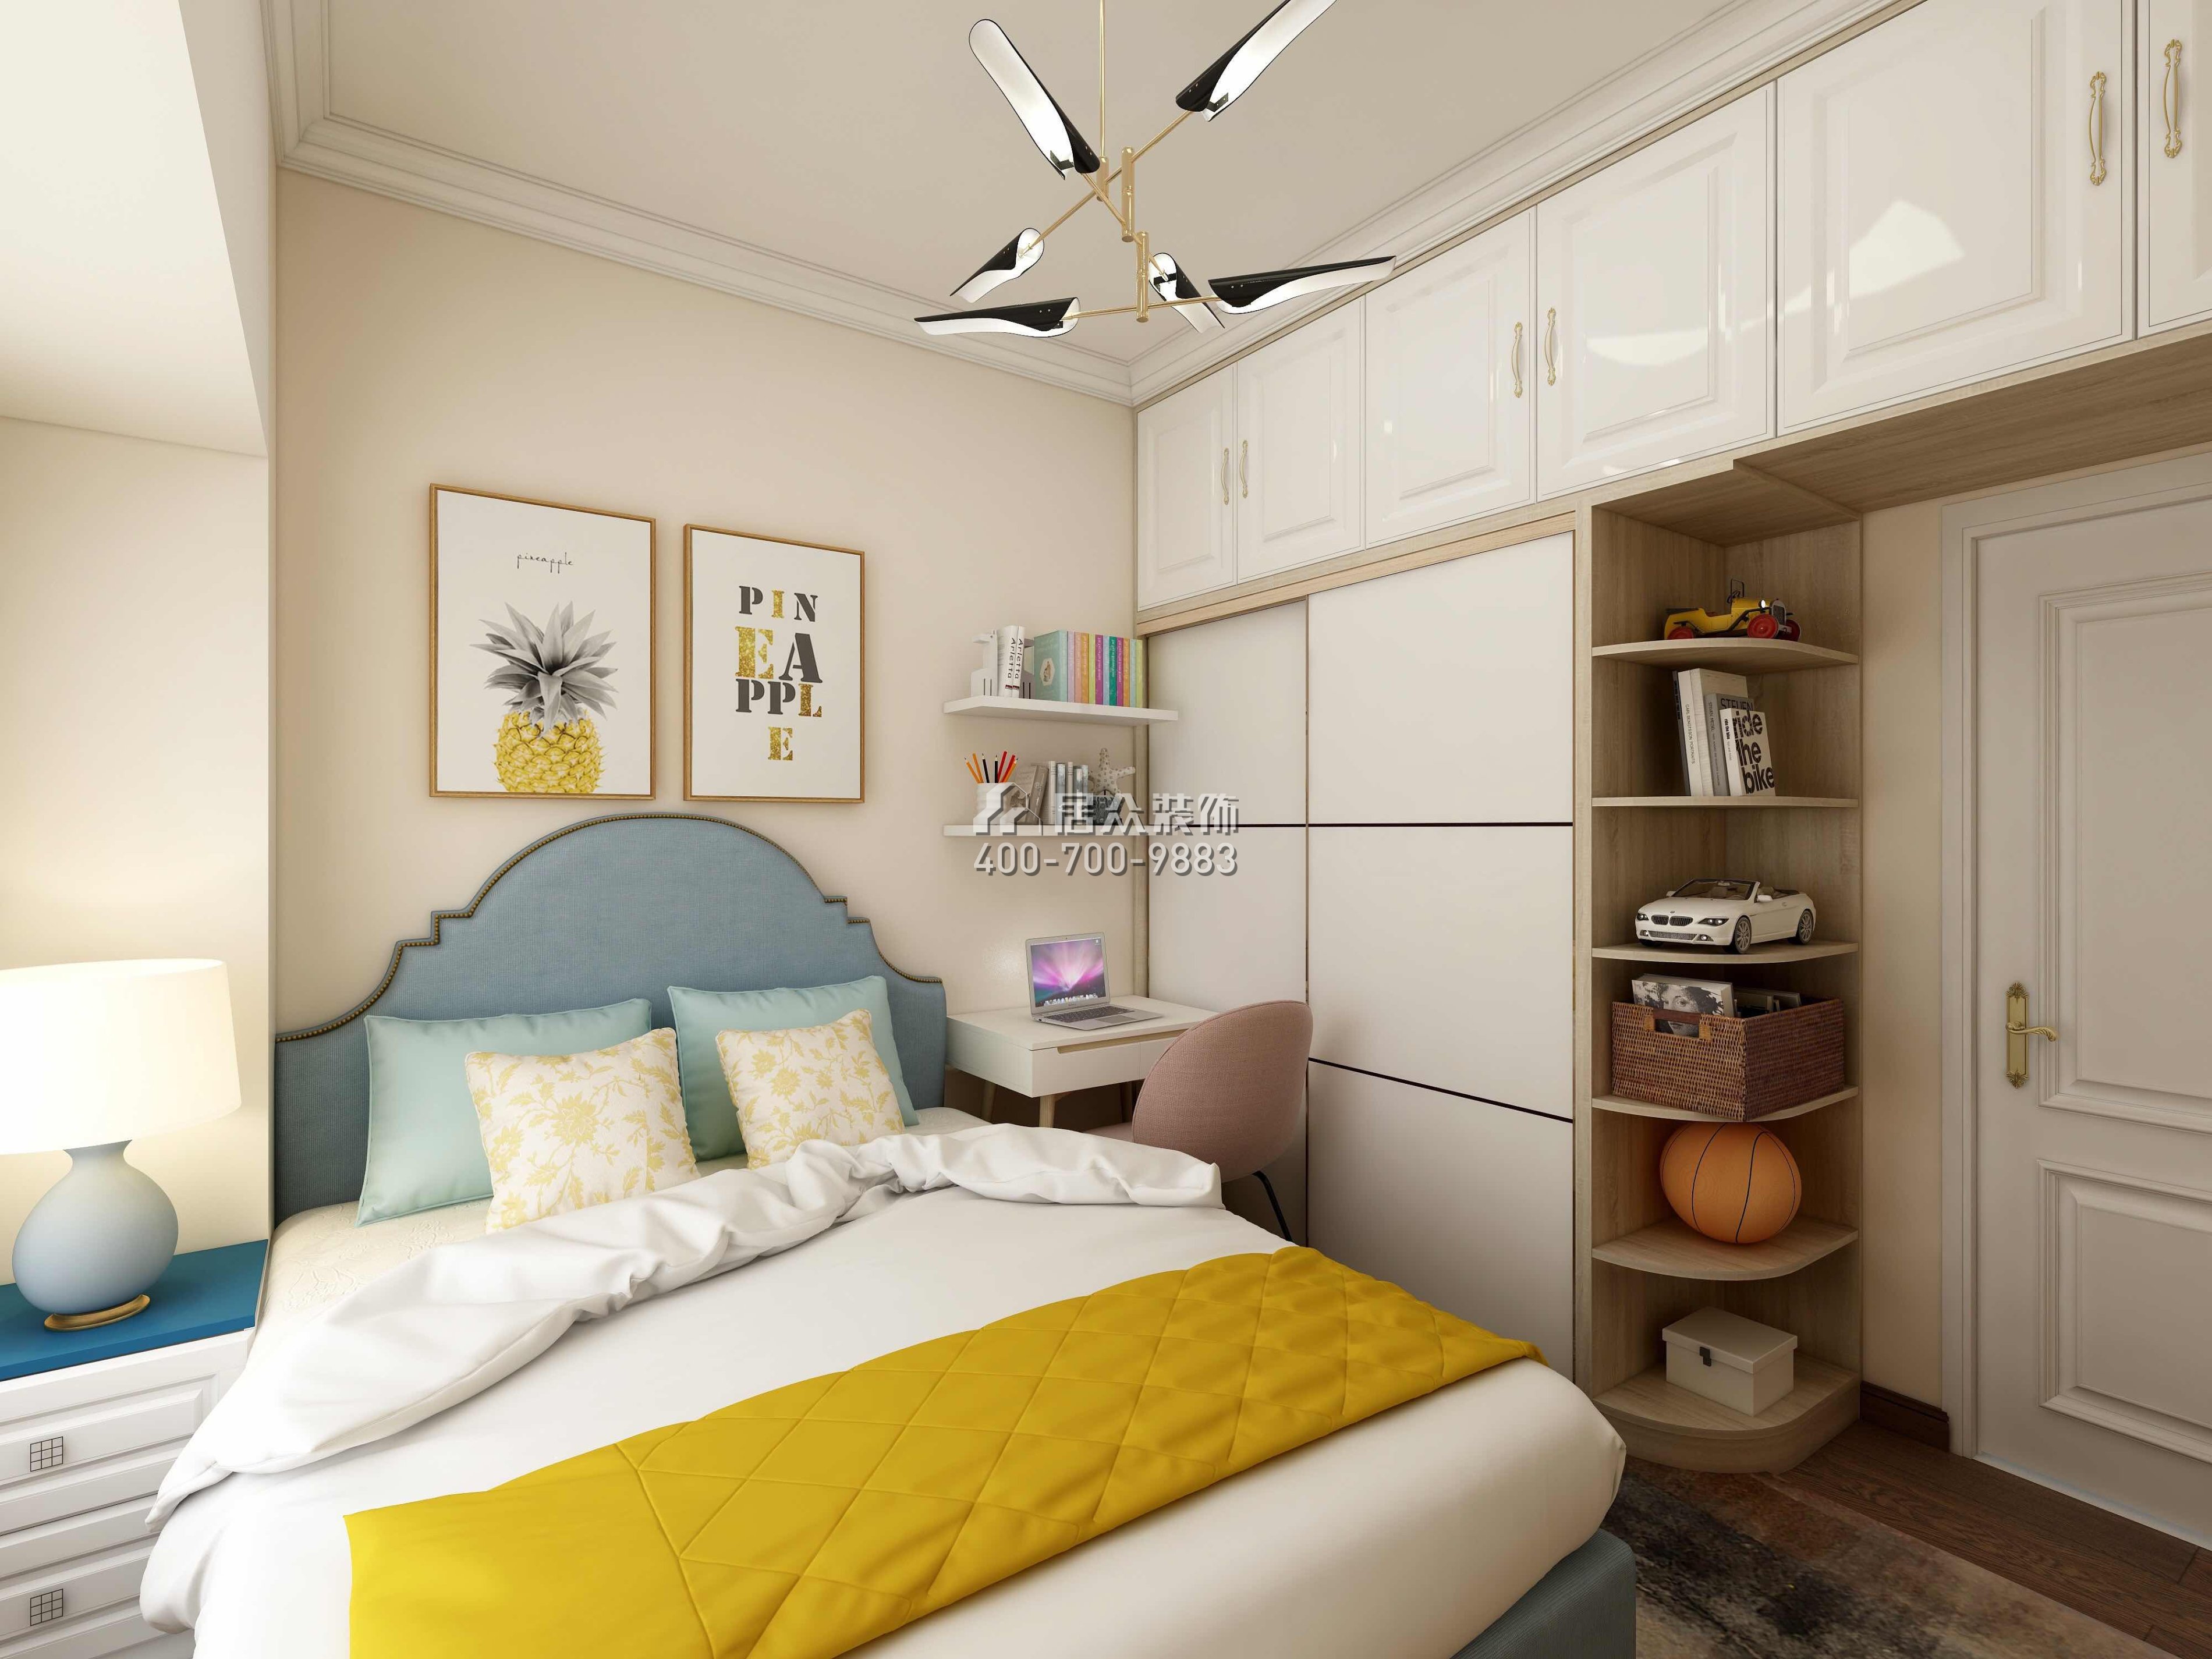 星河丹堤128平方米现代简约风格平层户型卧室装修效果图